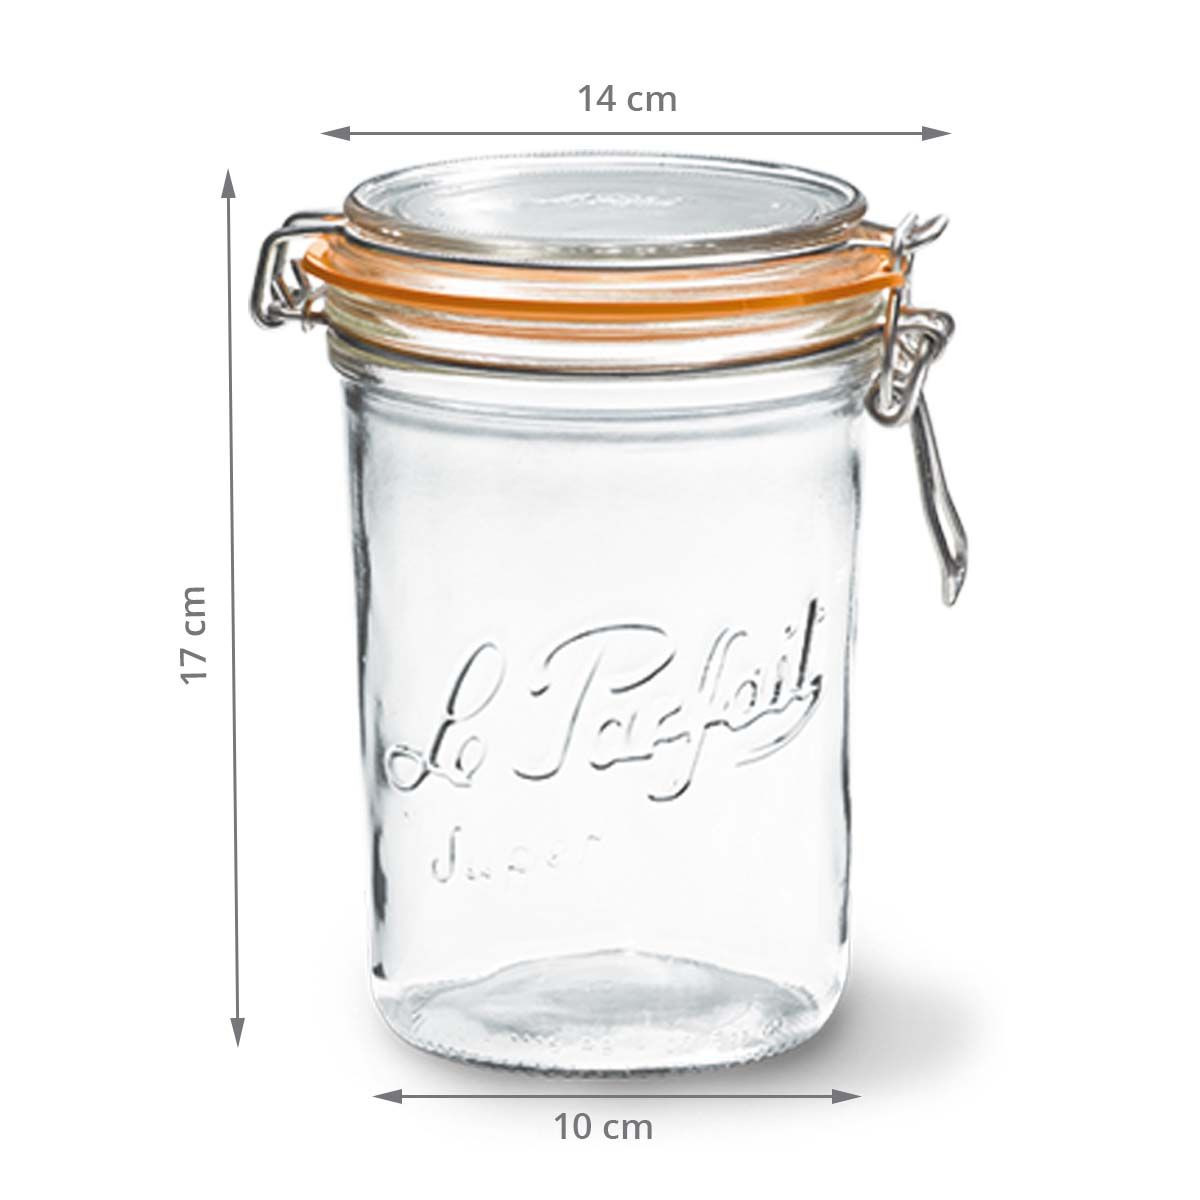 Bocal en verre Le Parfait - 1 litre - Fabriqué en France - ON RANGE TOUT